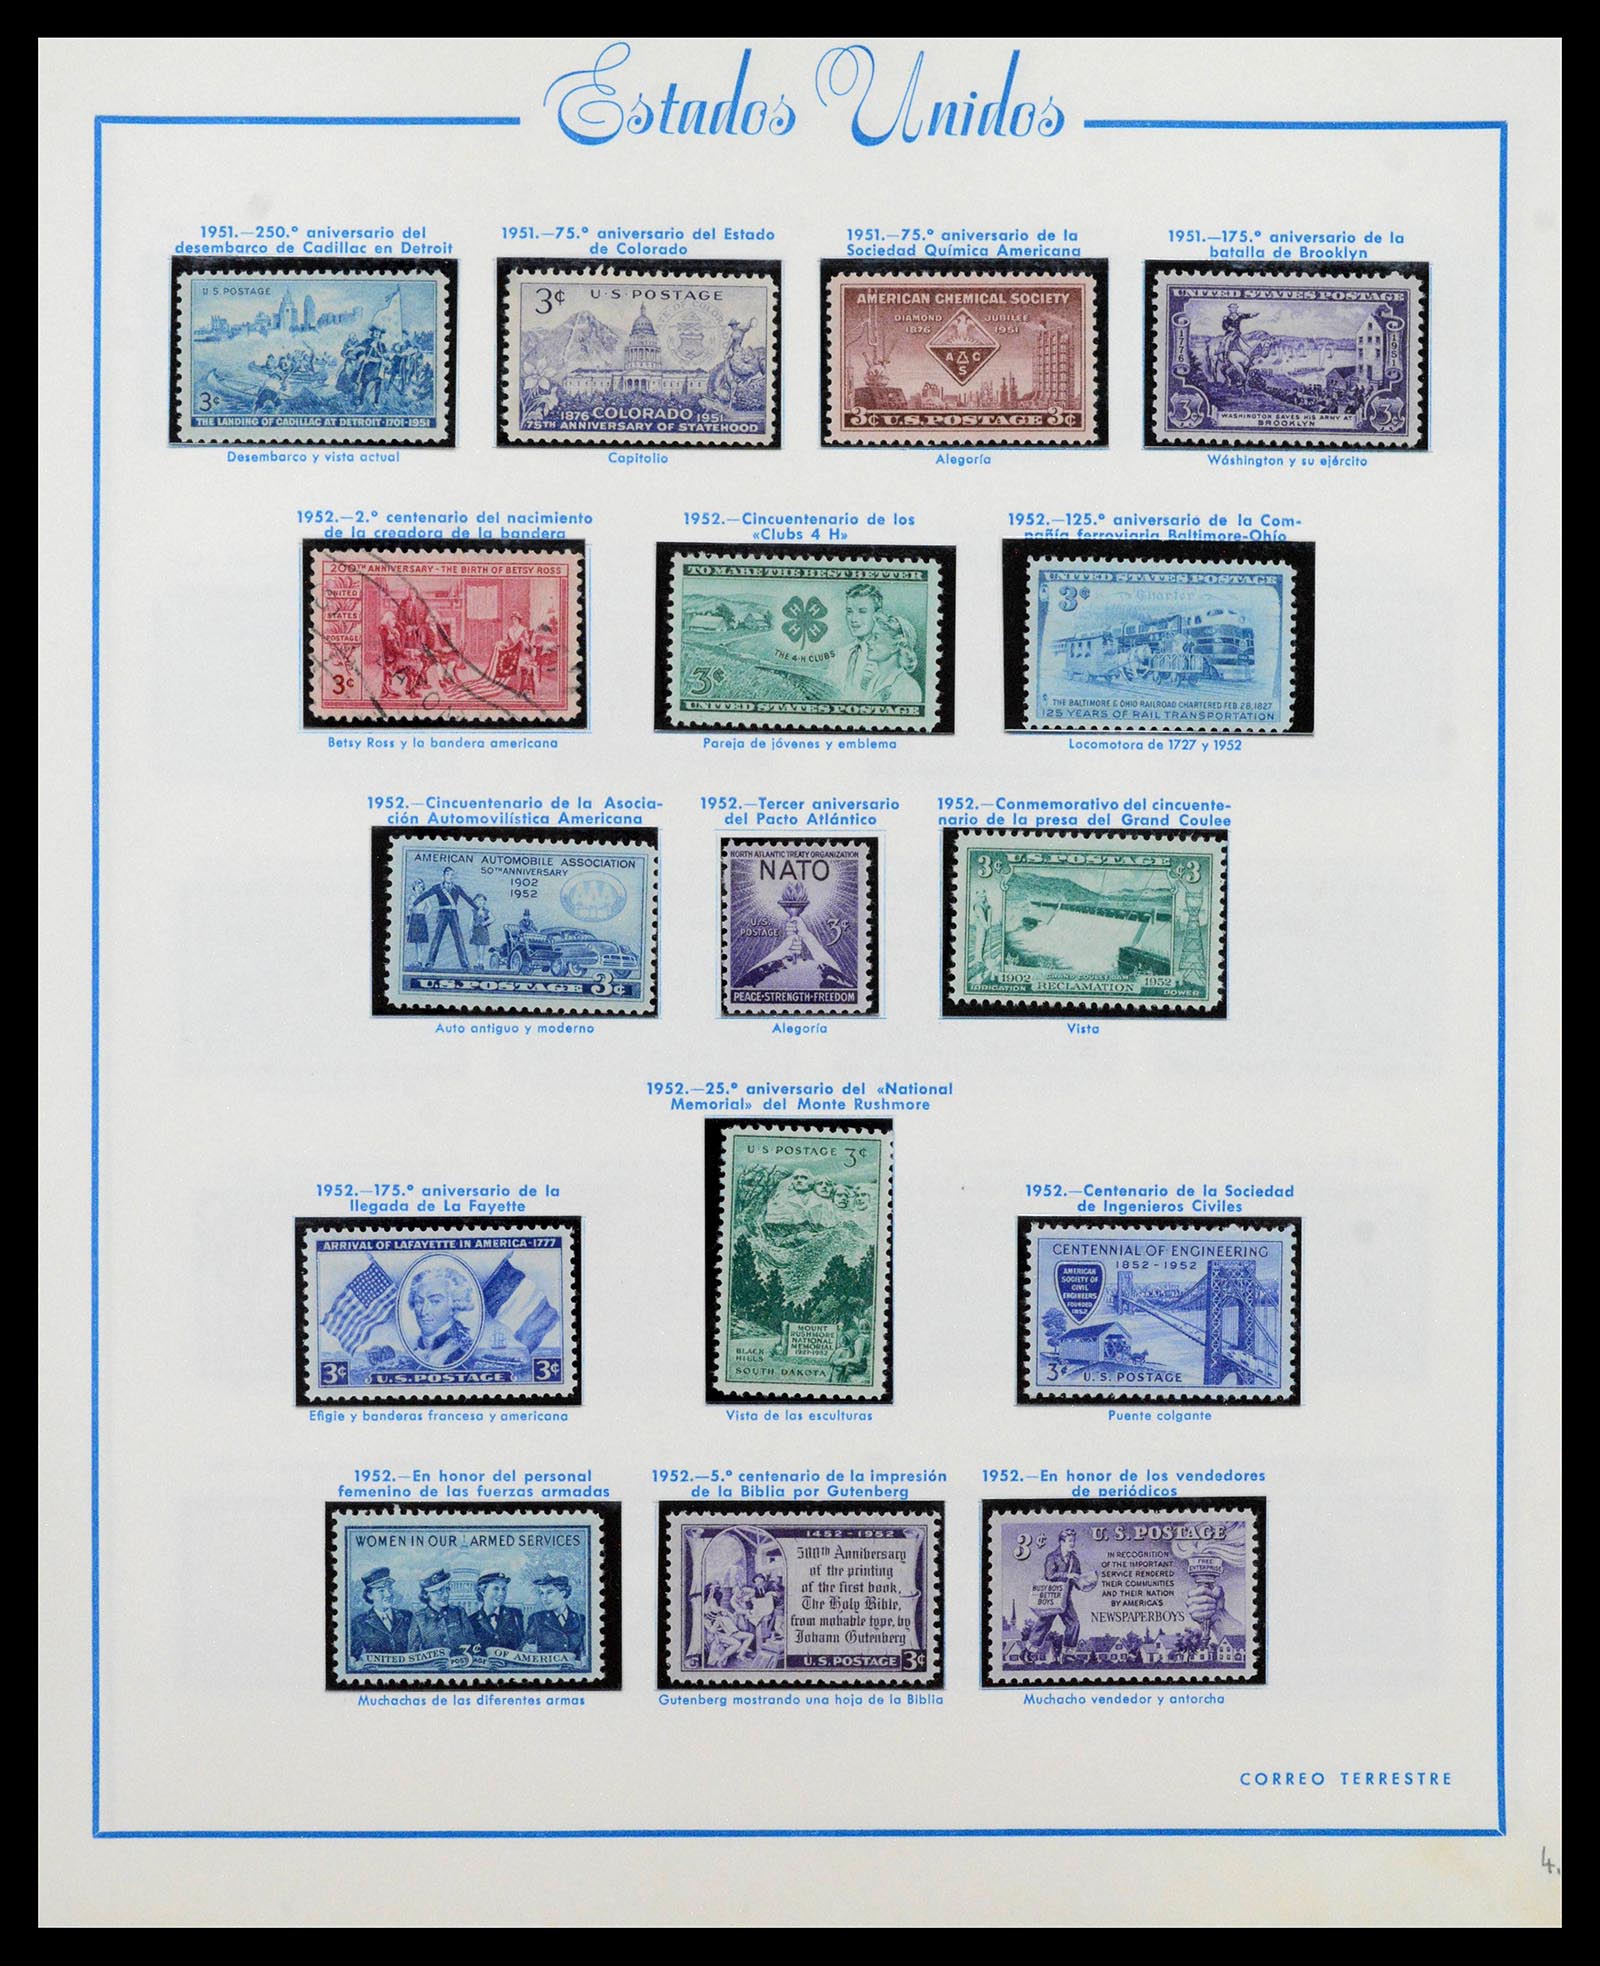 39190 0030 - Stamp collection 39190 USA 1851-1975.